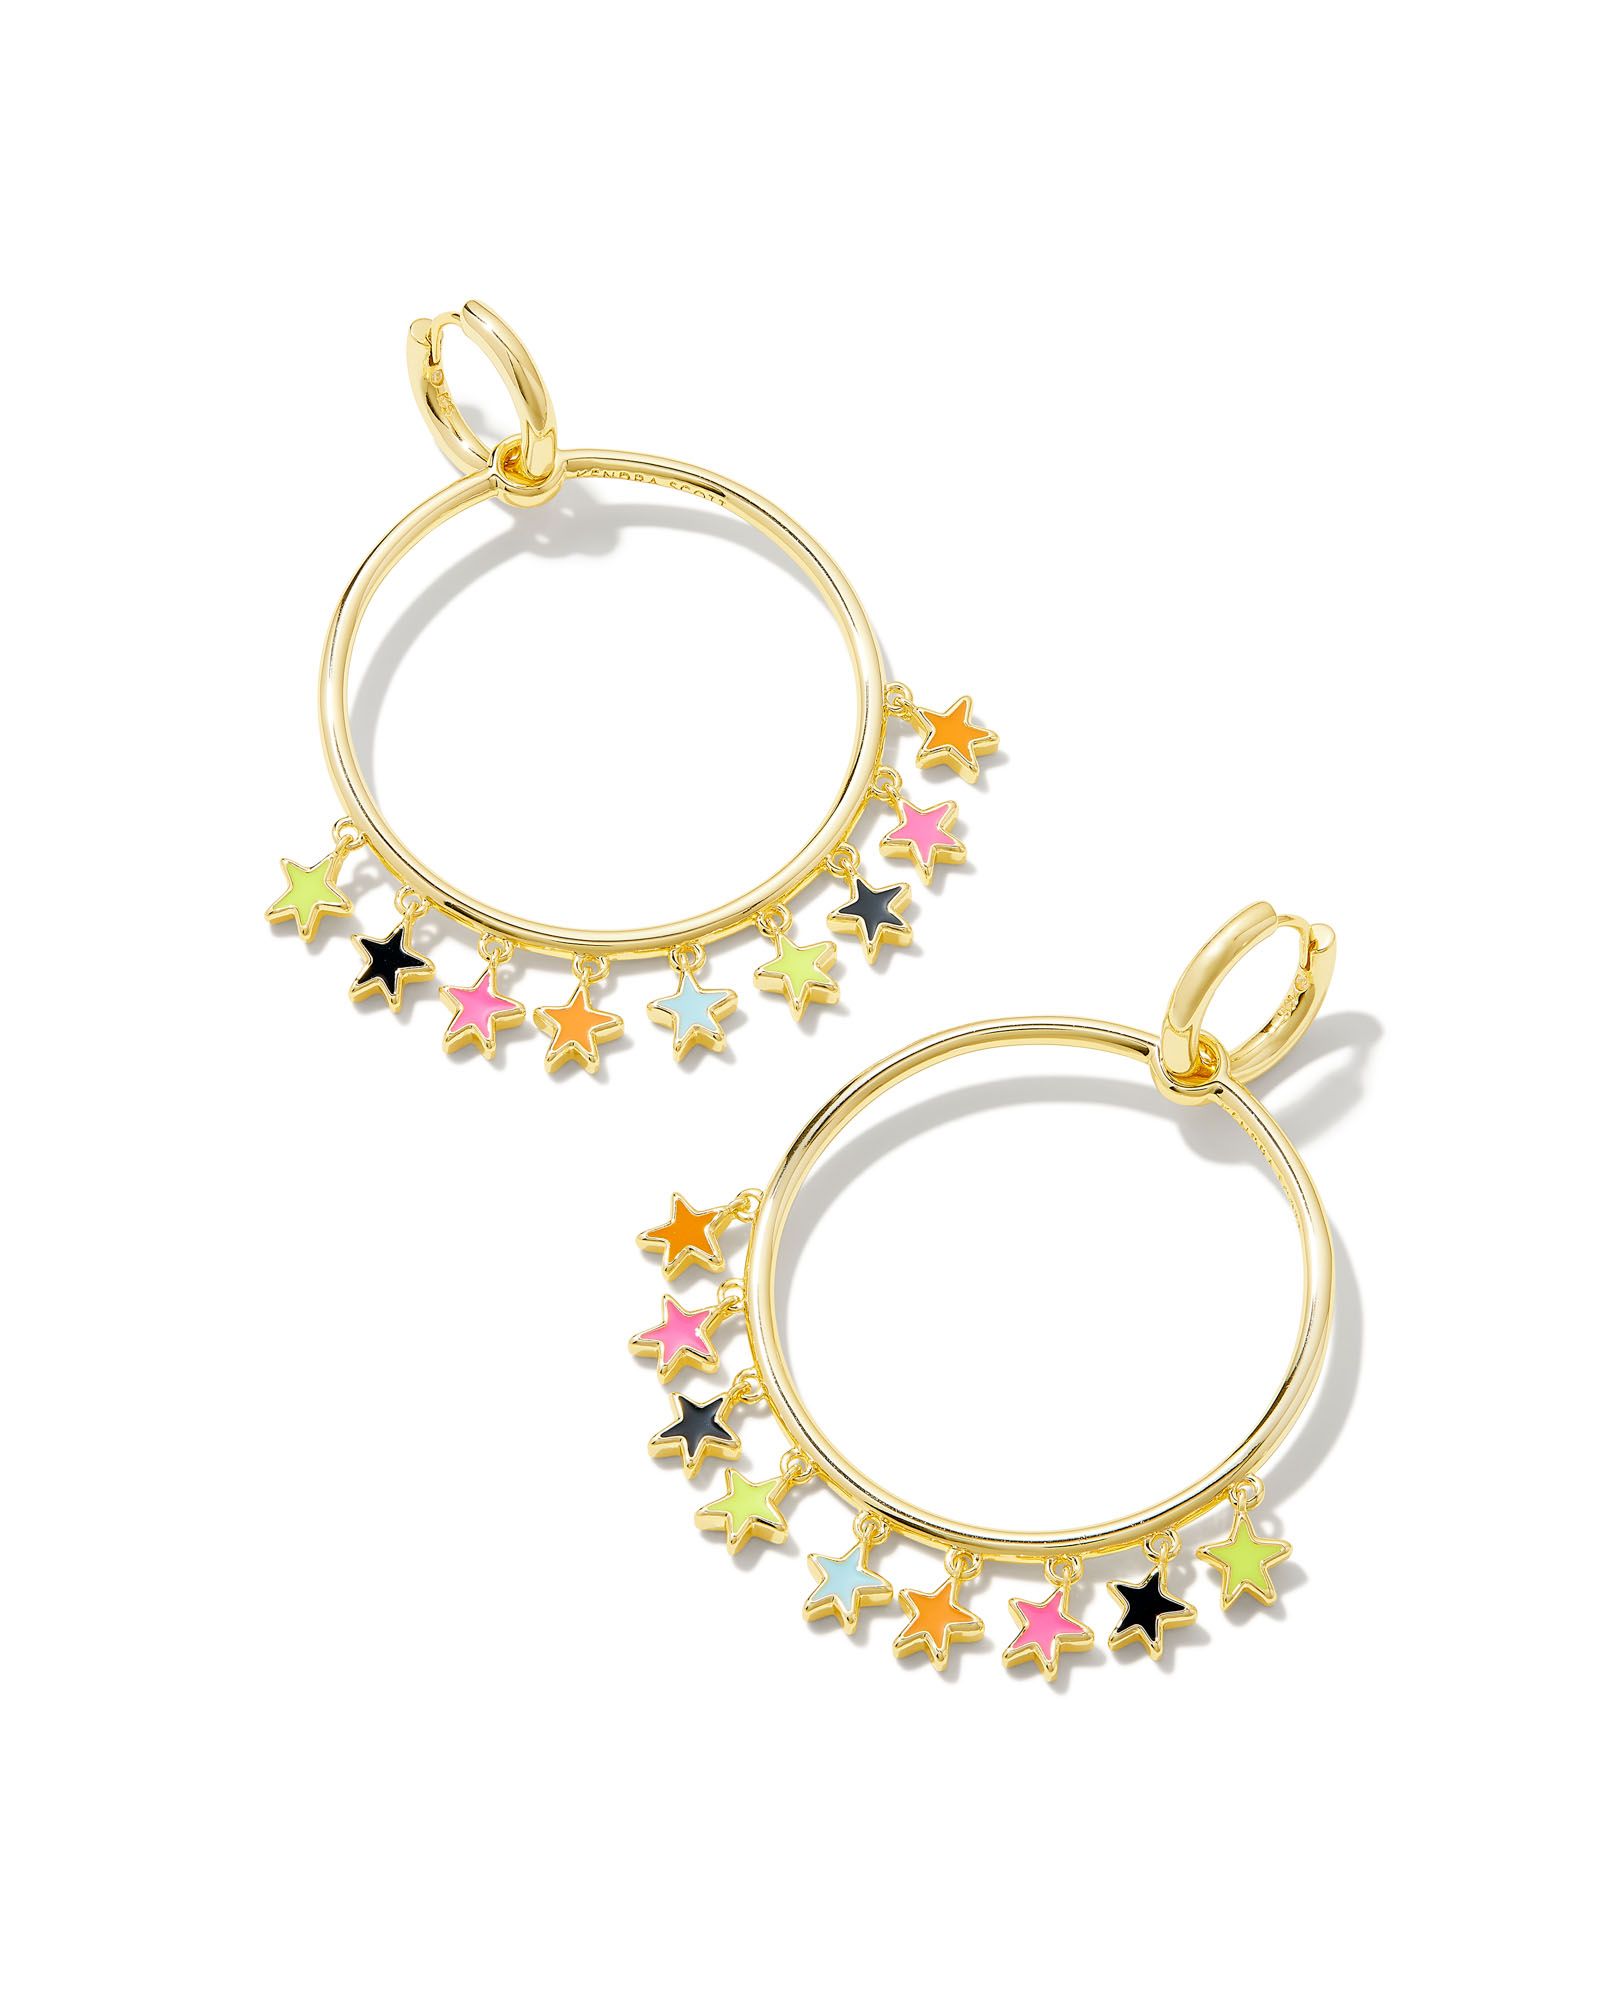 Sloane Gold Star Convertible Open Frame Earrings in Multi Mix | Kendra Scott